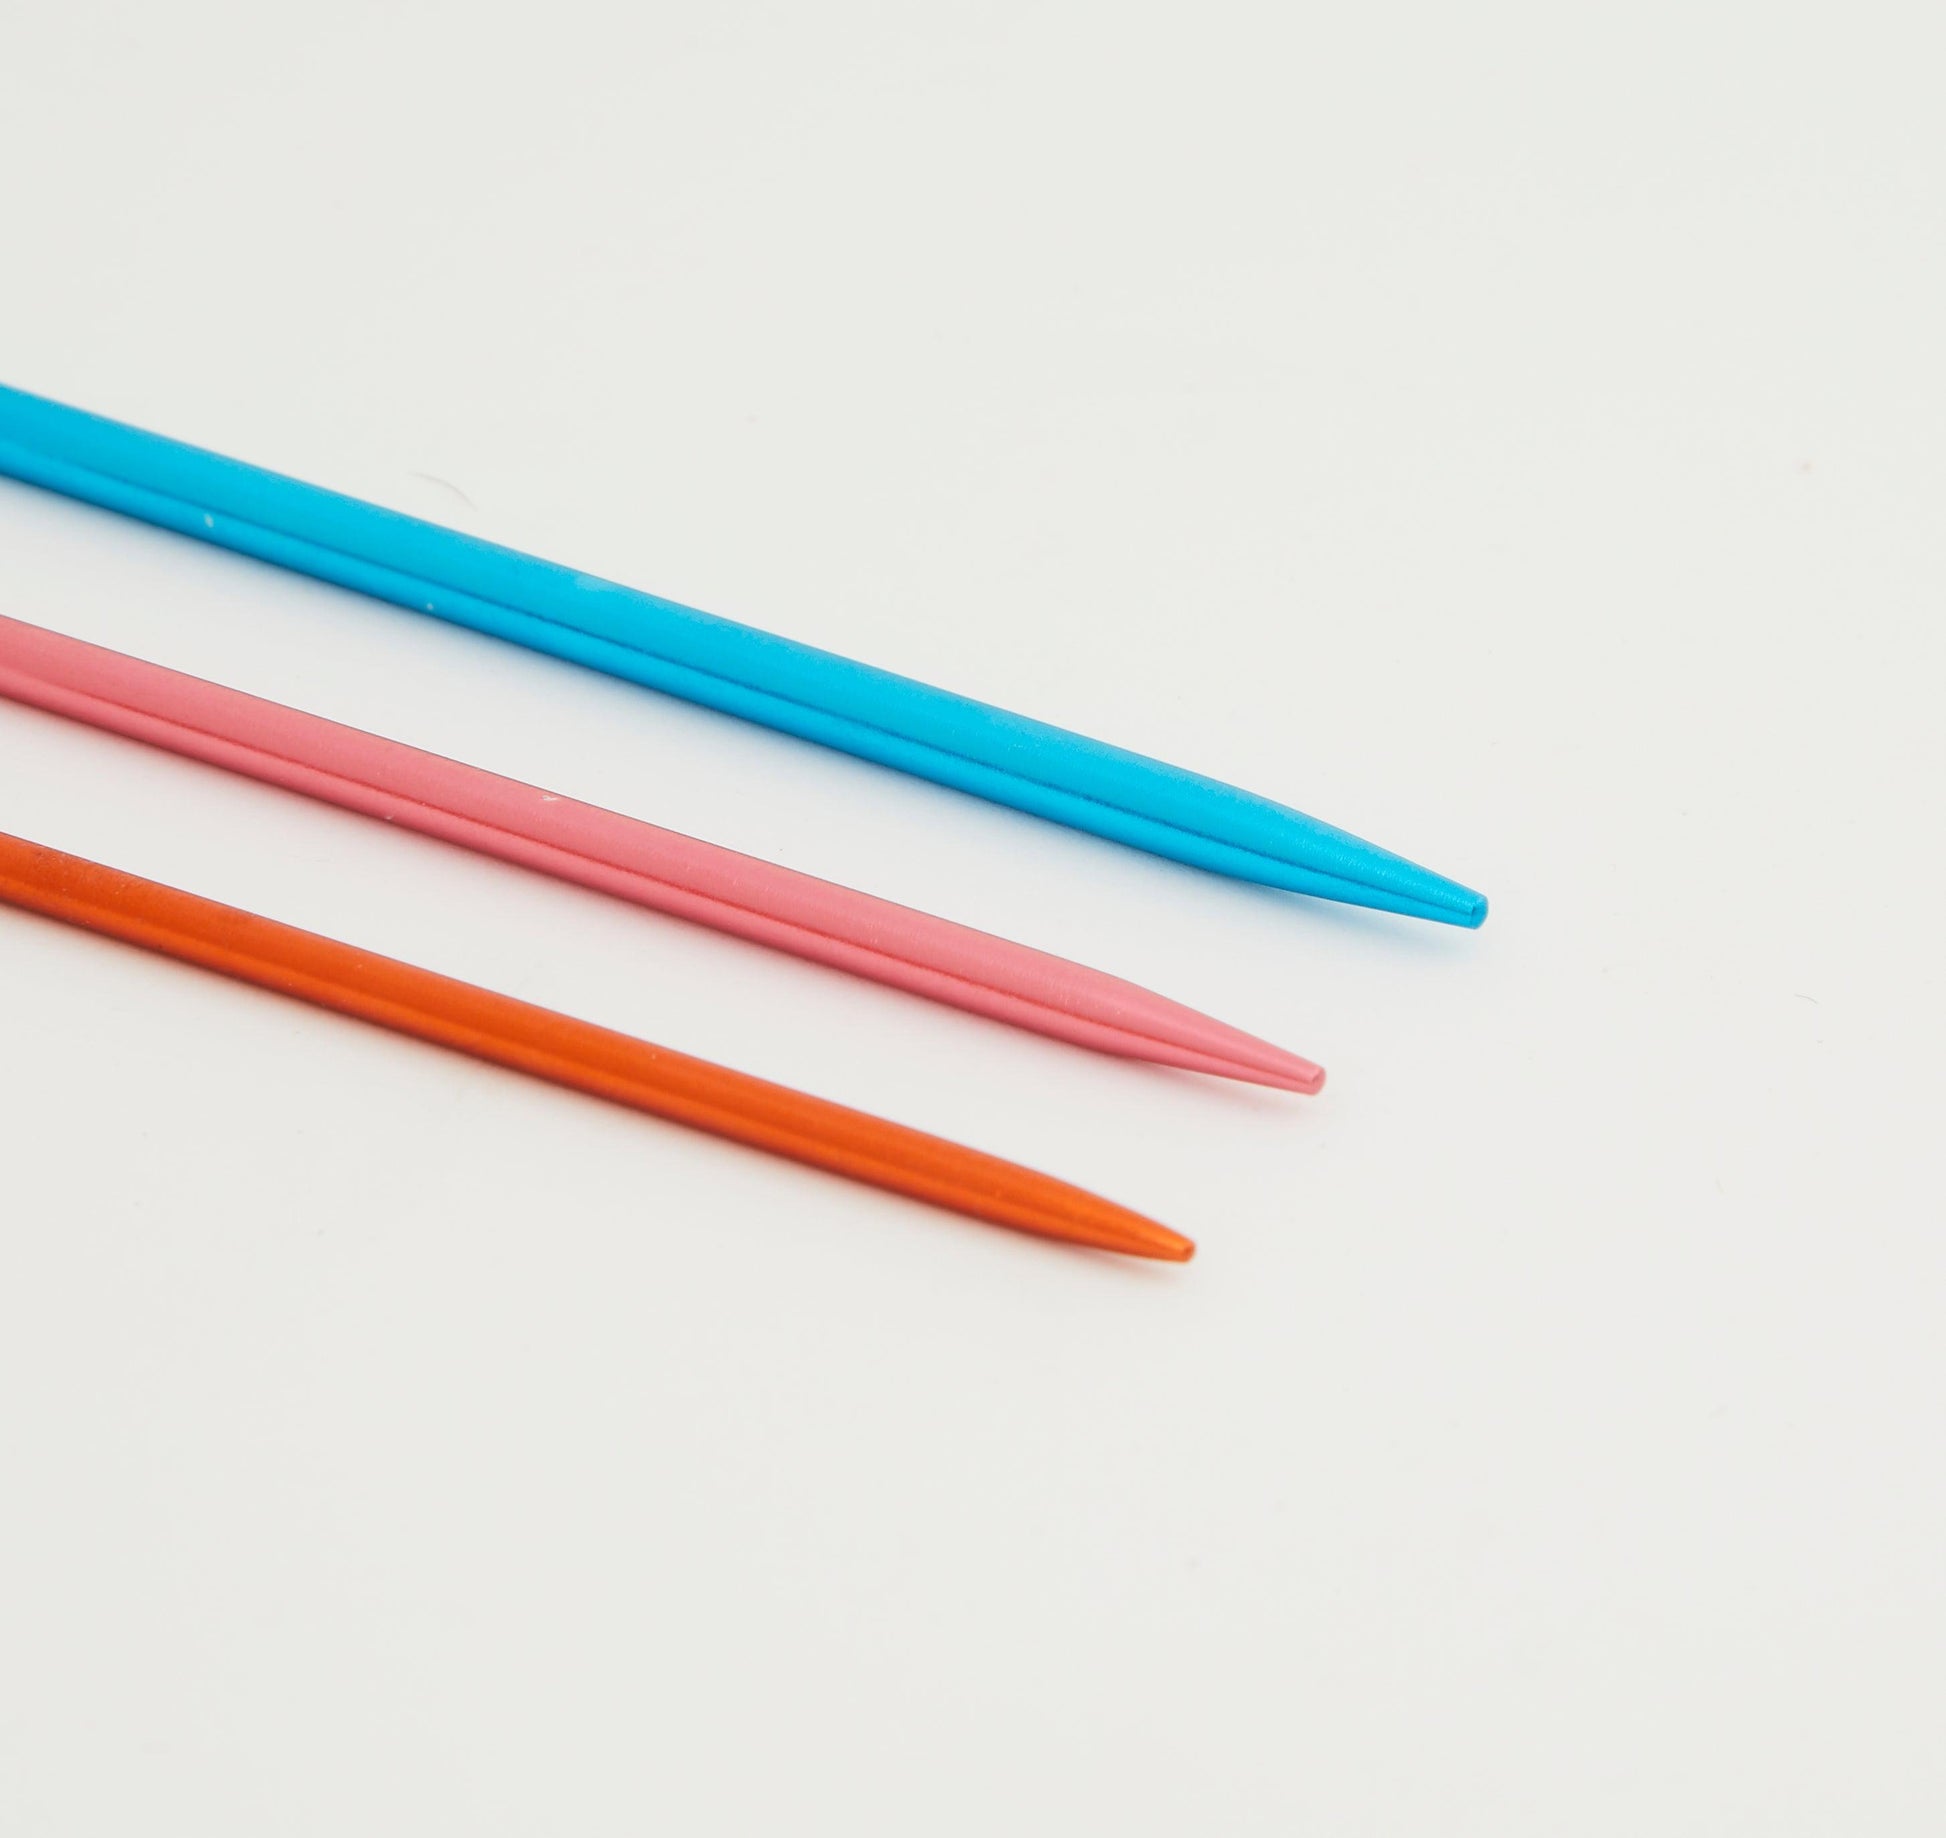 KnitPro Utility Tools, Wool Needles Set of 3 Needles (10944) - Leo Hobby